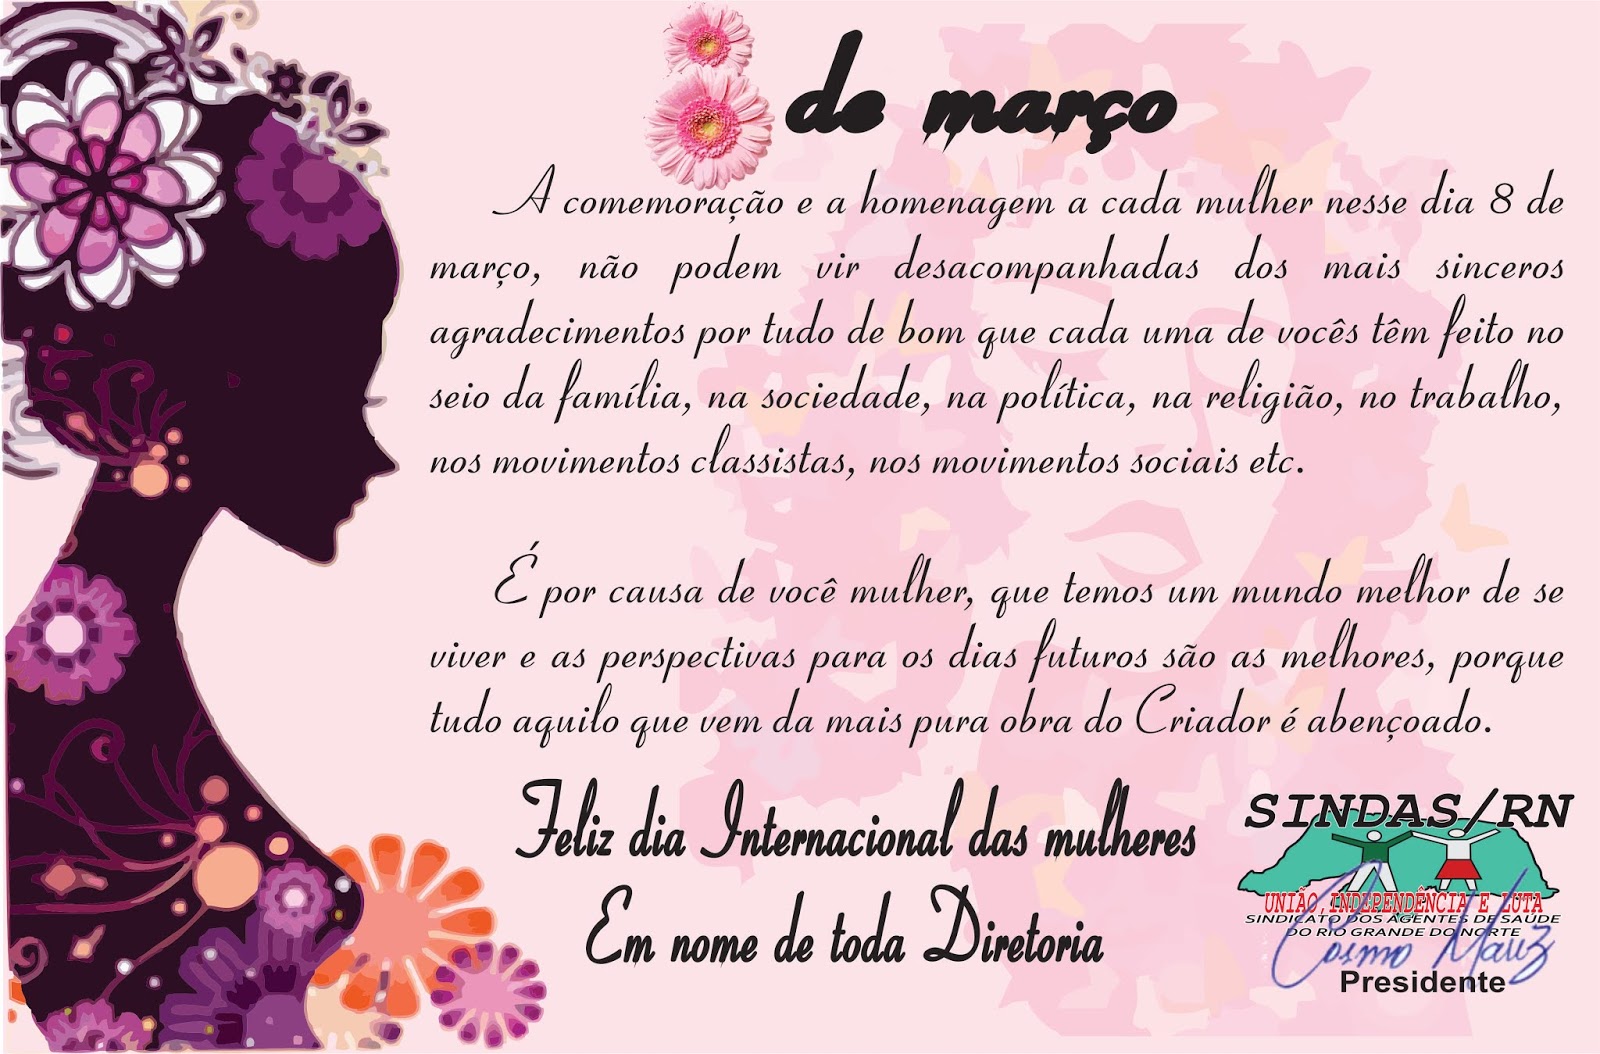 COSMO MARIZ: Feliz Dia Internacional das Mulheres